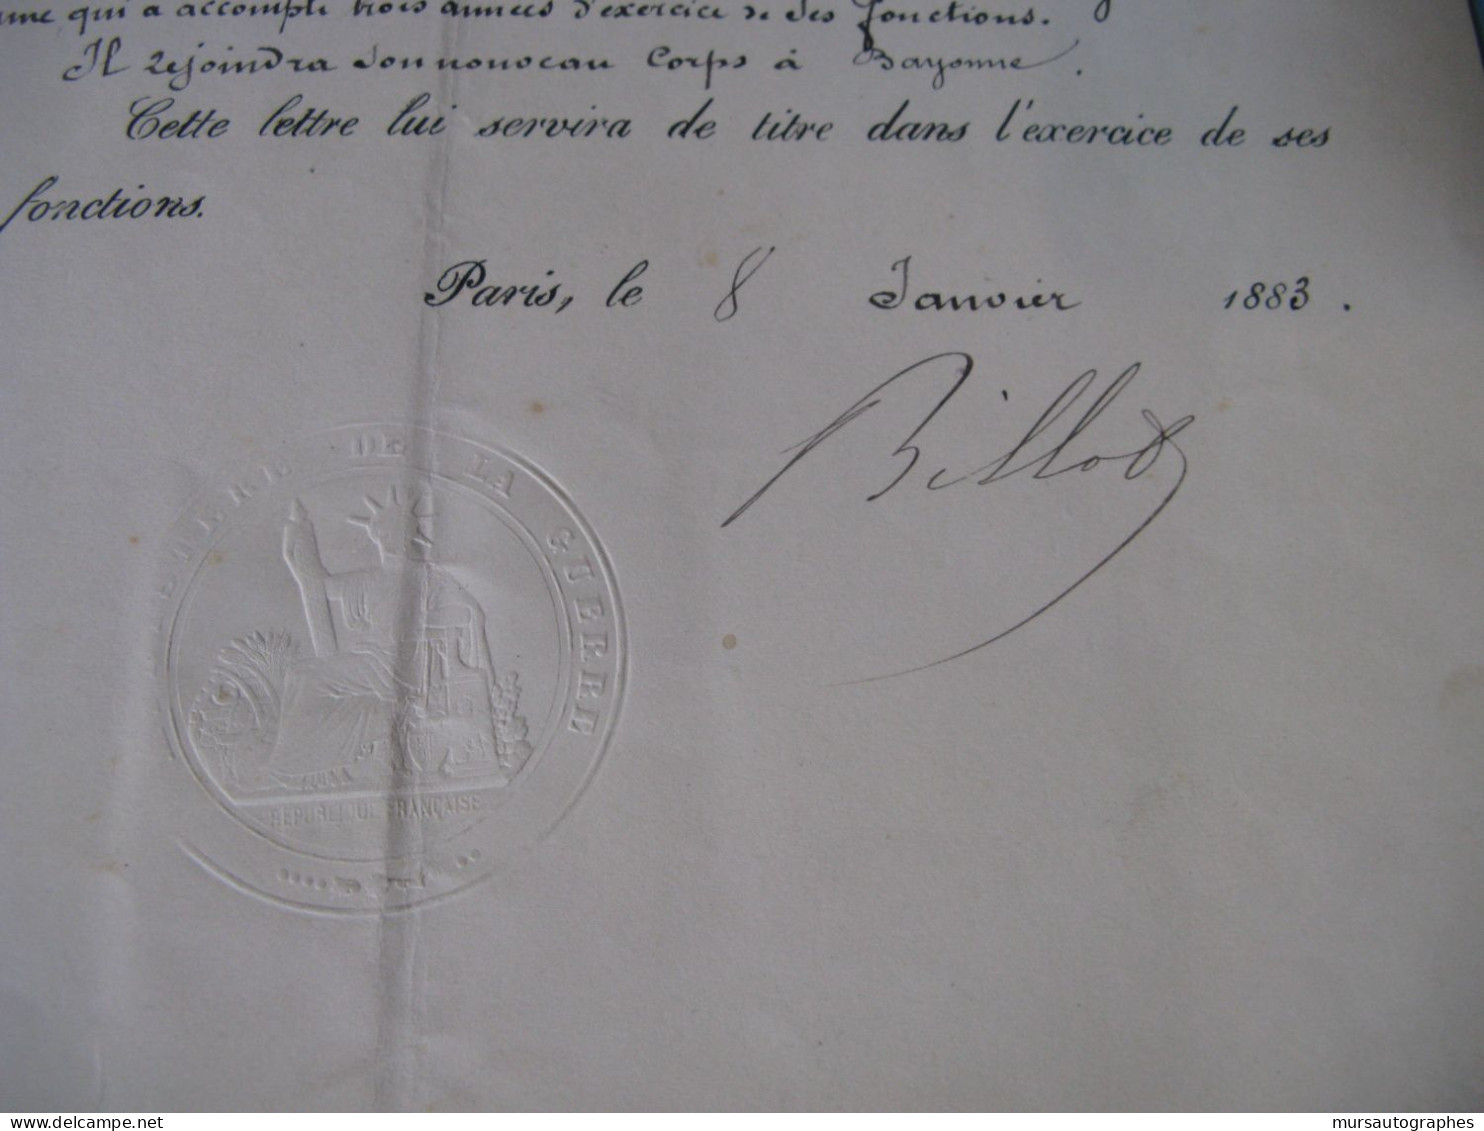 LETTRE SIGNEE DE JEAN-BAPTISTE BILLOT 1883 MILITAIRE MINISTRE GUERRE DREYFUS DEPUTE CORREZE - Historical Figures